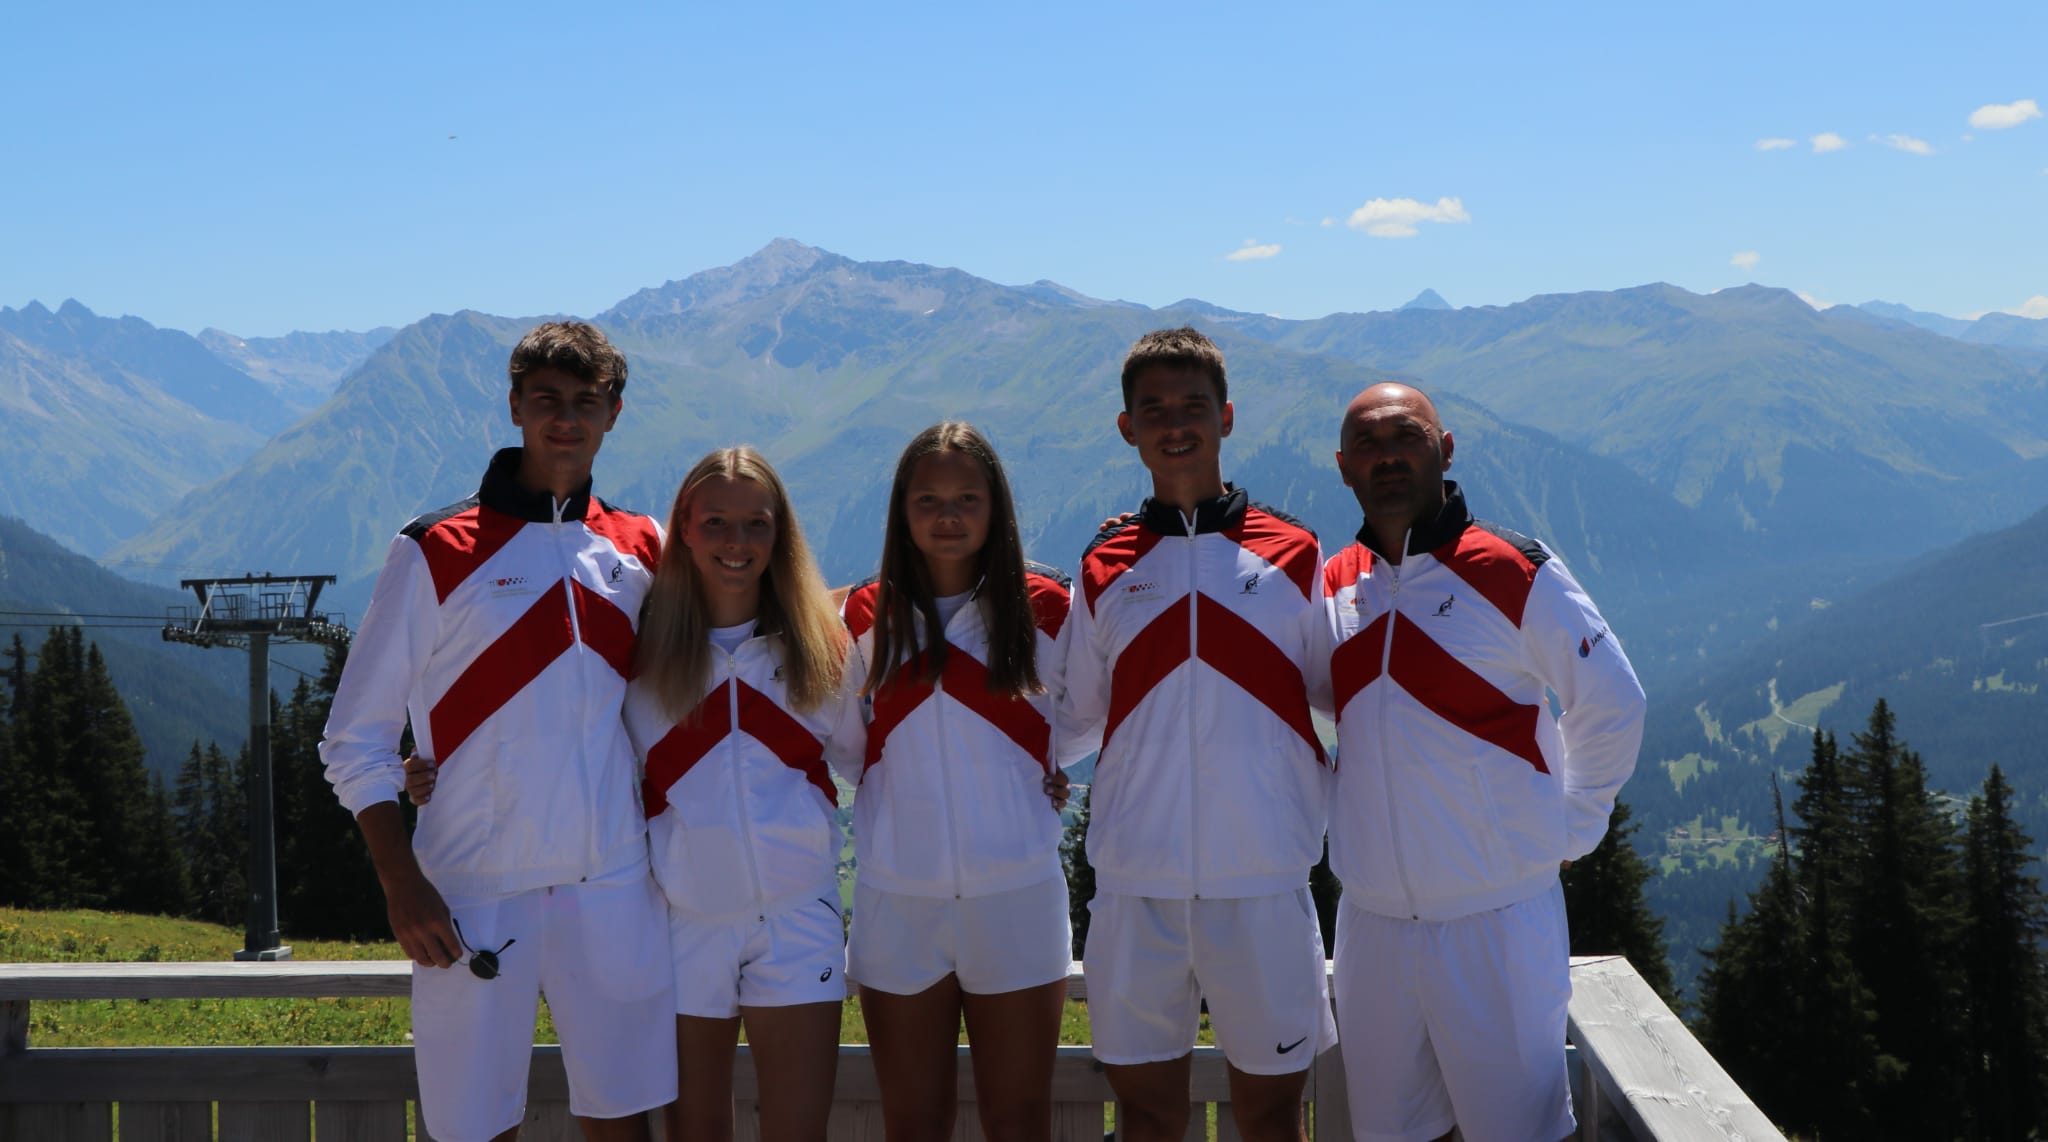 Prižmić i Svetac do 3. kola Europskog prvenstva u Klostersu, Voljavec dalje u Prerovu